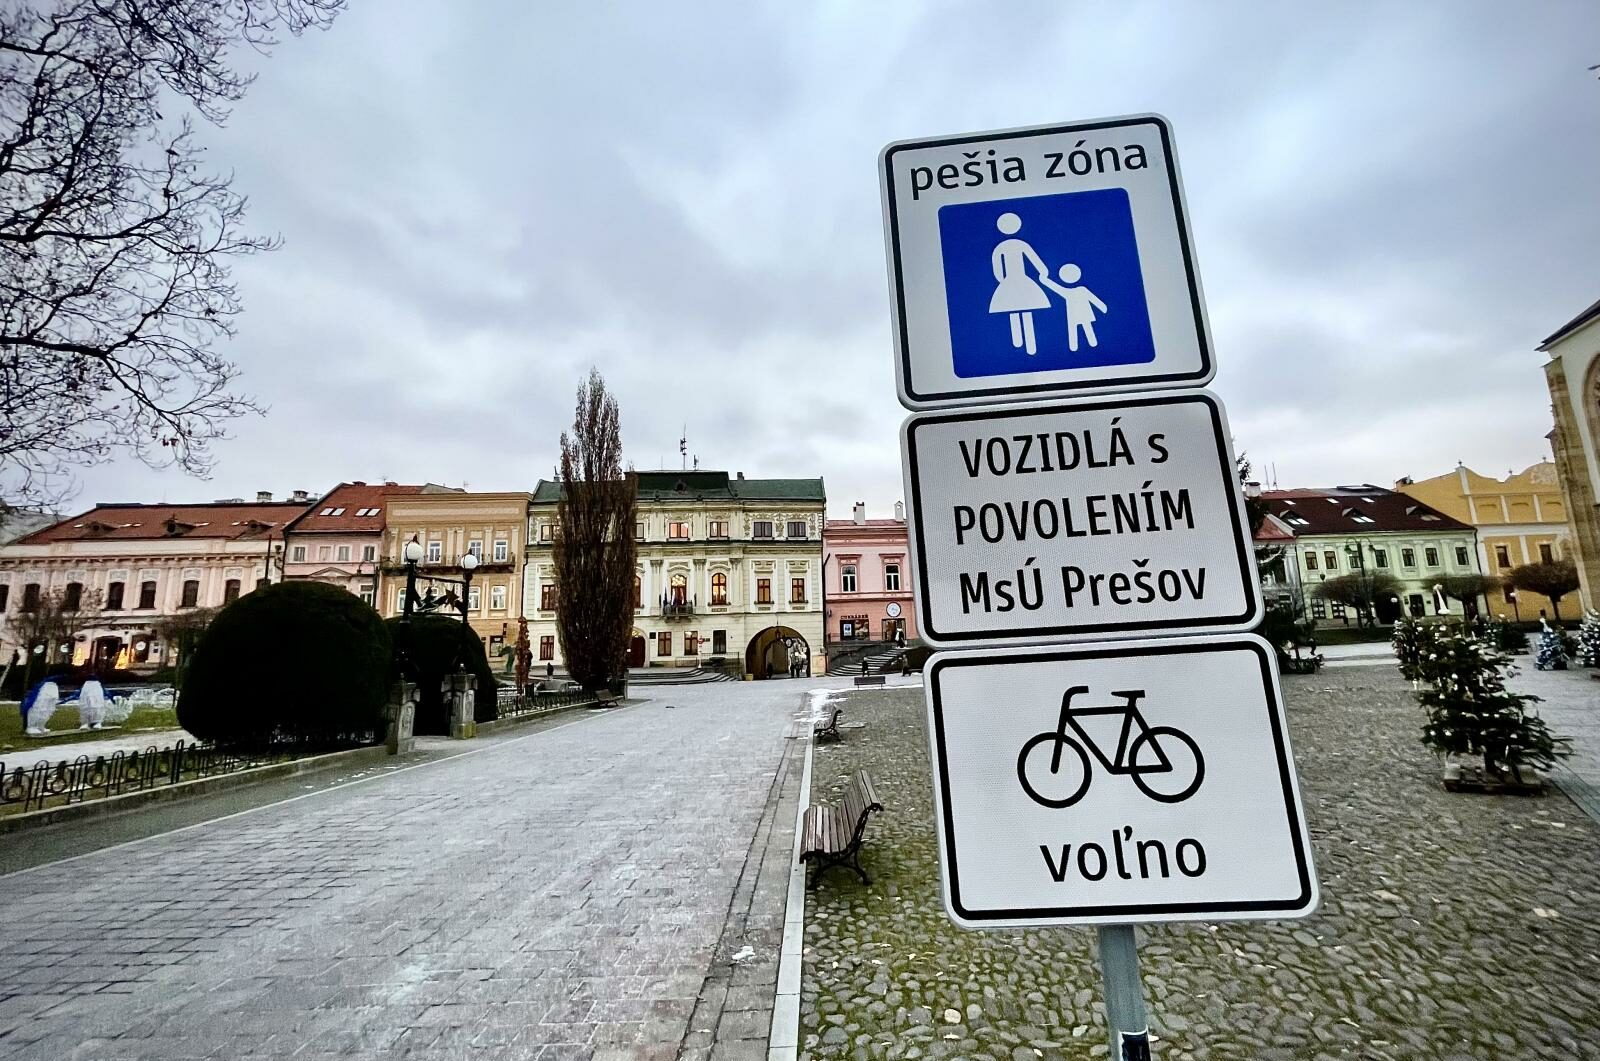 Vjazd autom je do pešej zóny bez povolenia ZAKÁZANÝ. Mesto Prešov vysvetľuje dôvod